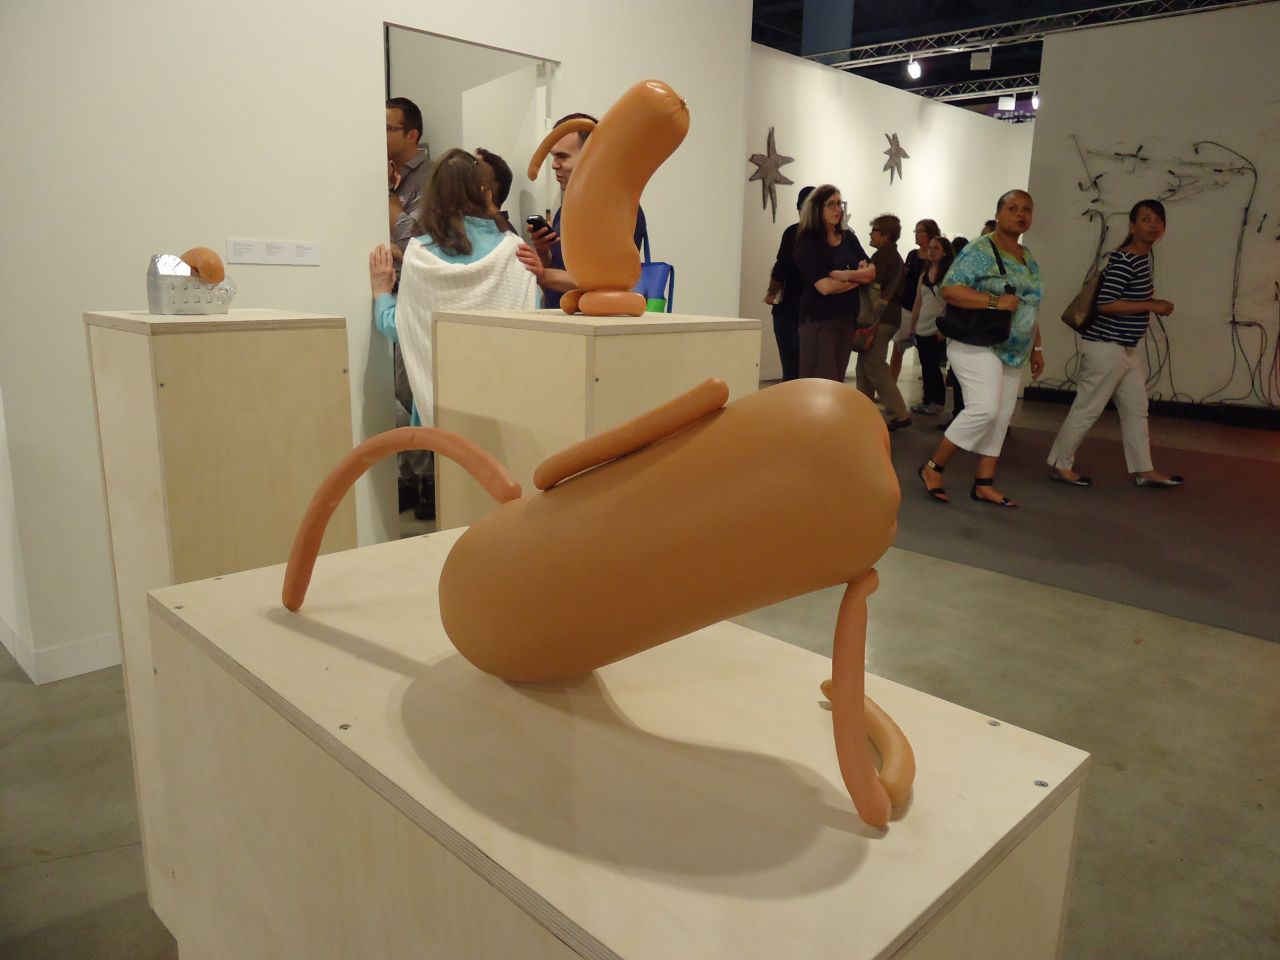 Un total de 258 galerías internacionales provenientes de 31 países de cuatro continentes conforman el Art Basel 2013. Estas son algunas de las obras exhibidas en el Centro de Convenciones de Miami Beach